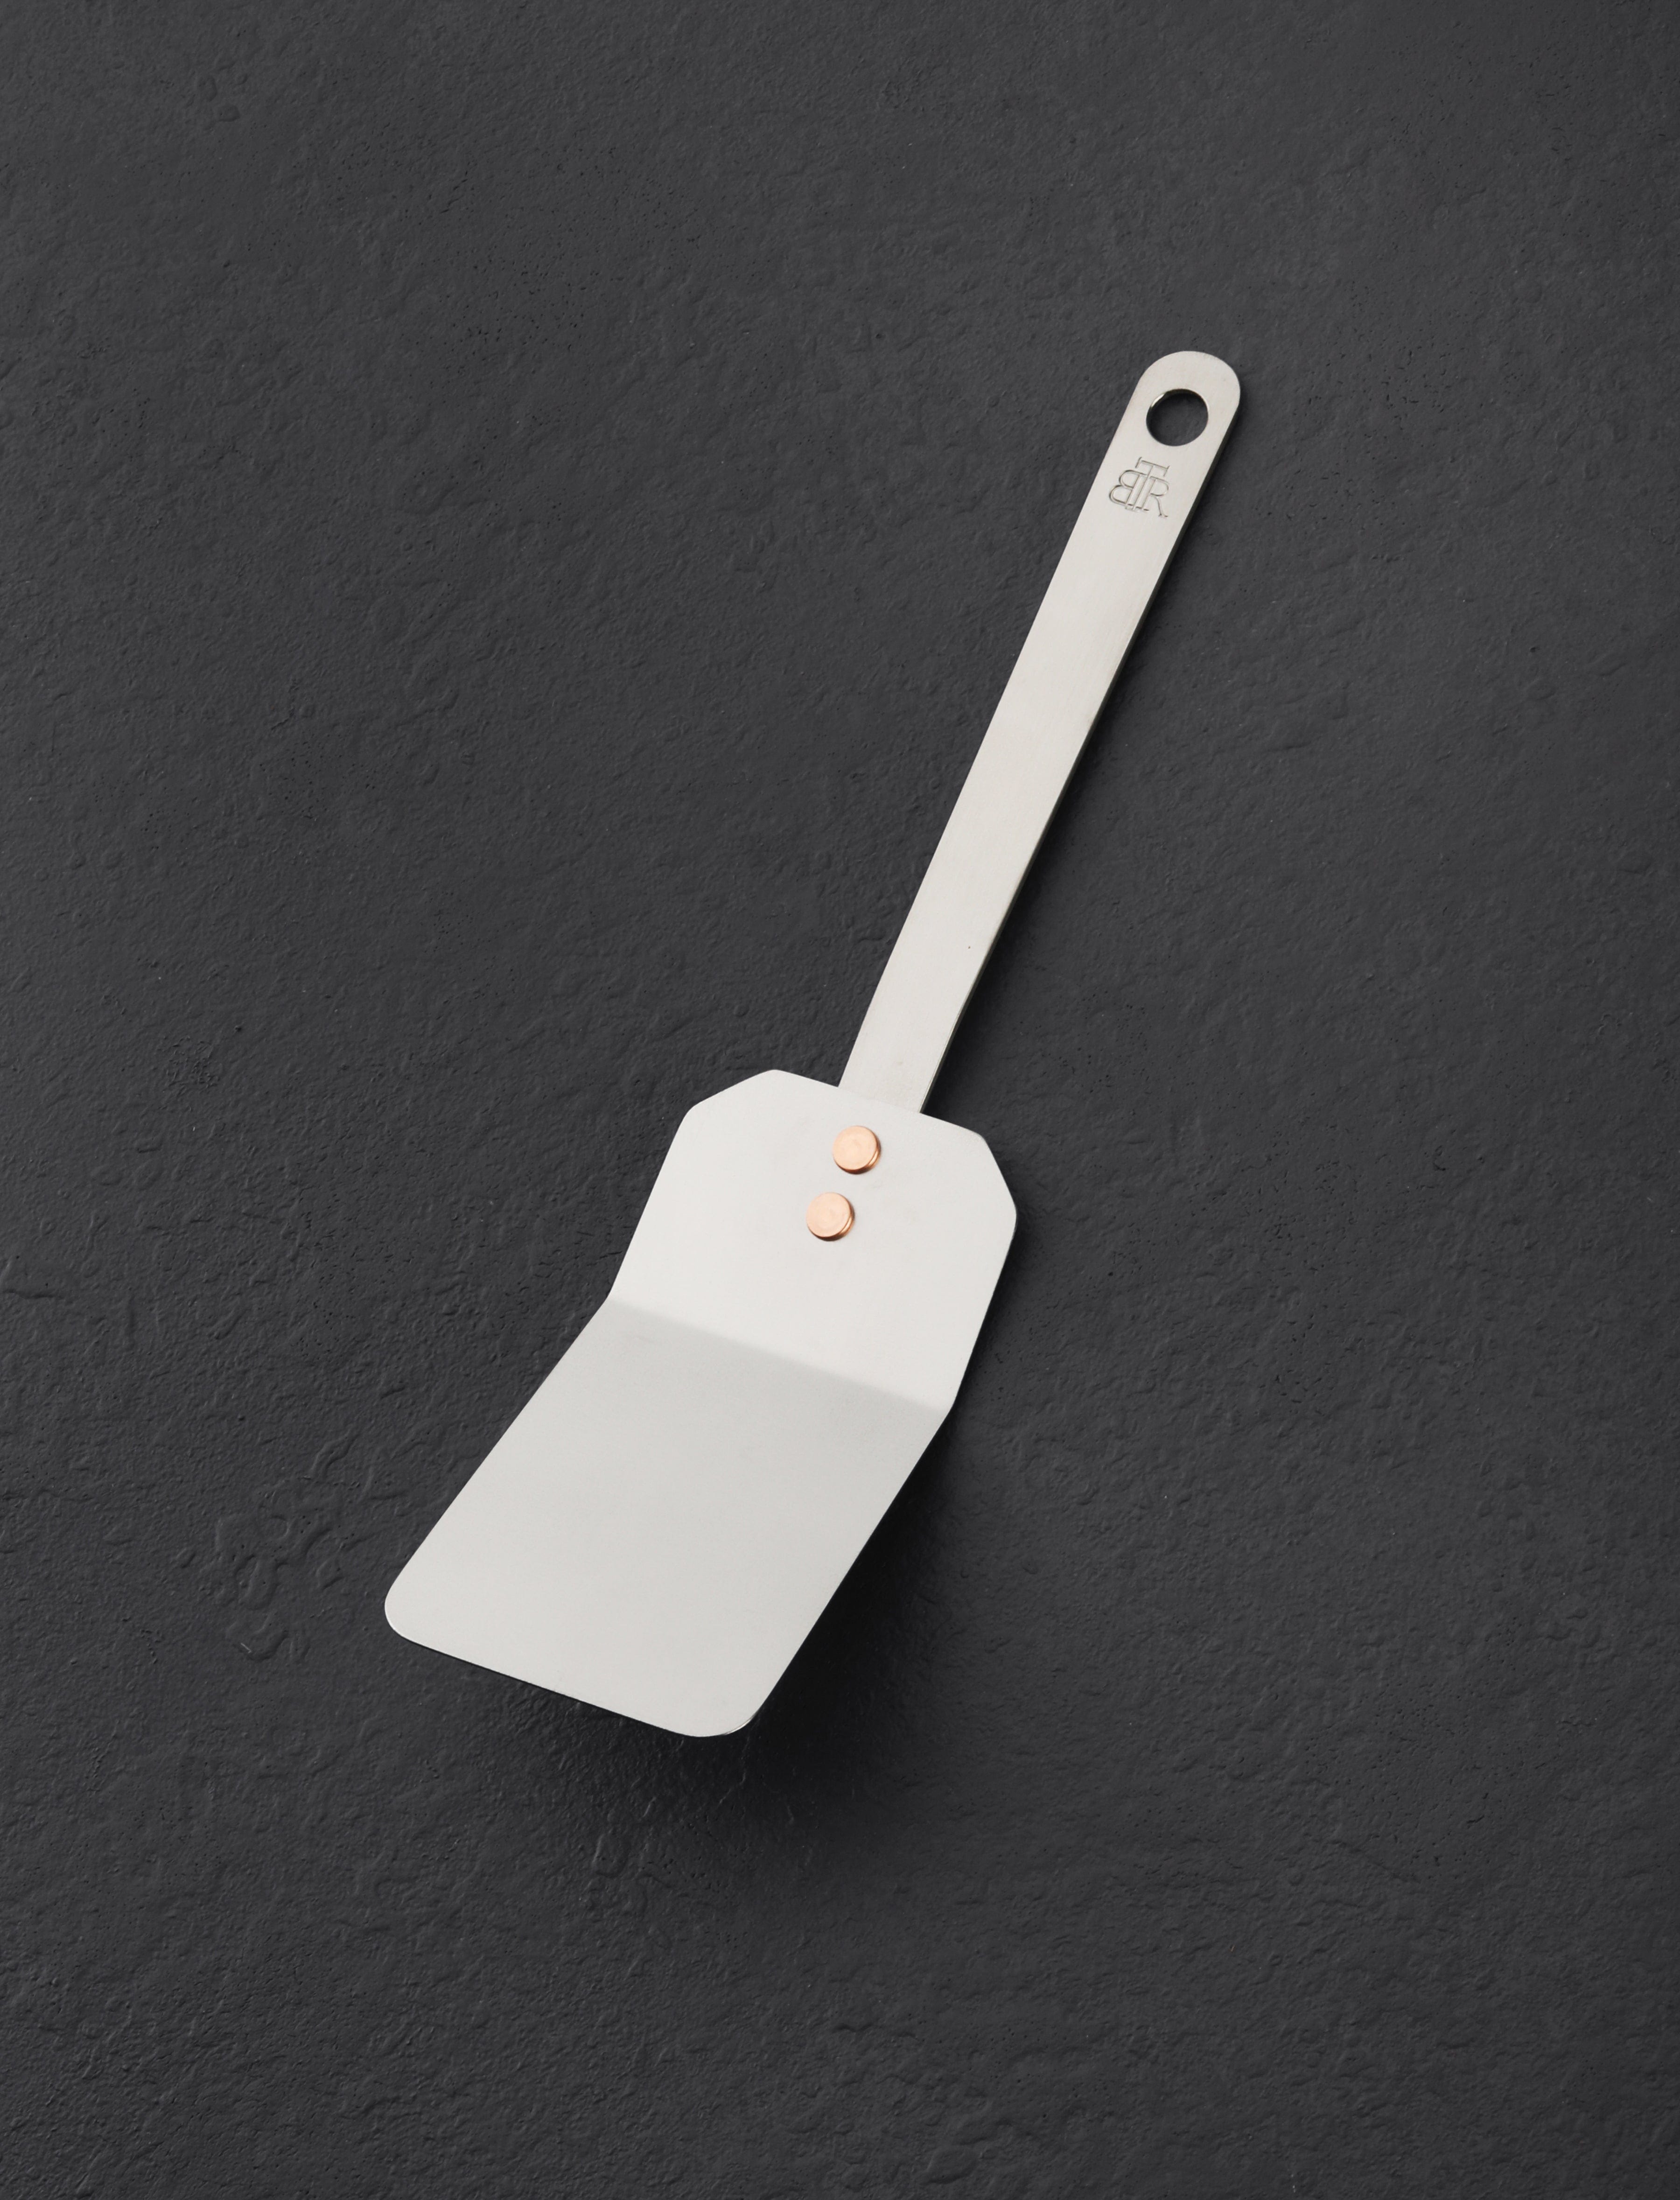 http://eatingtools.com/cdn/shop/files/spatulas-ben-tendick-oregon-tispats-mini-titanium-spatula-43020338757907.jpg?v=1693334171